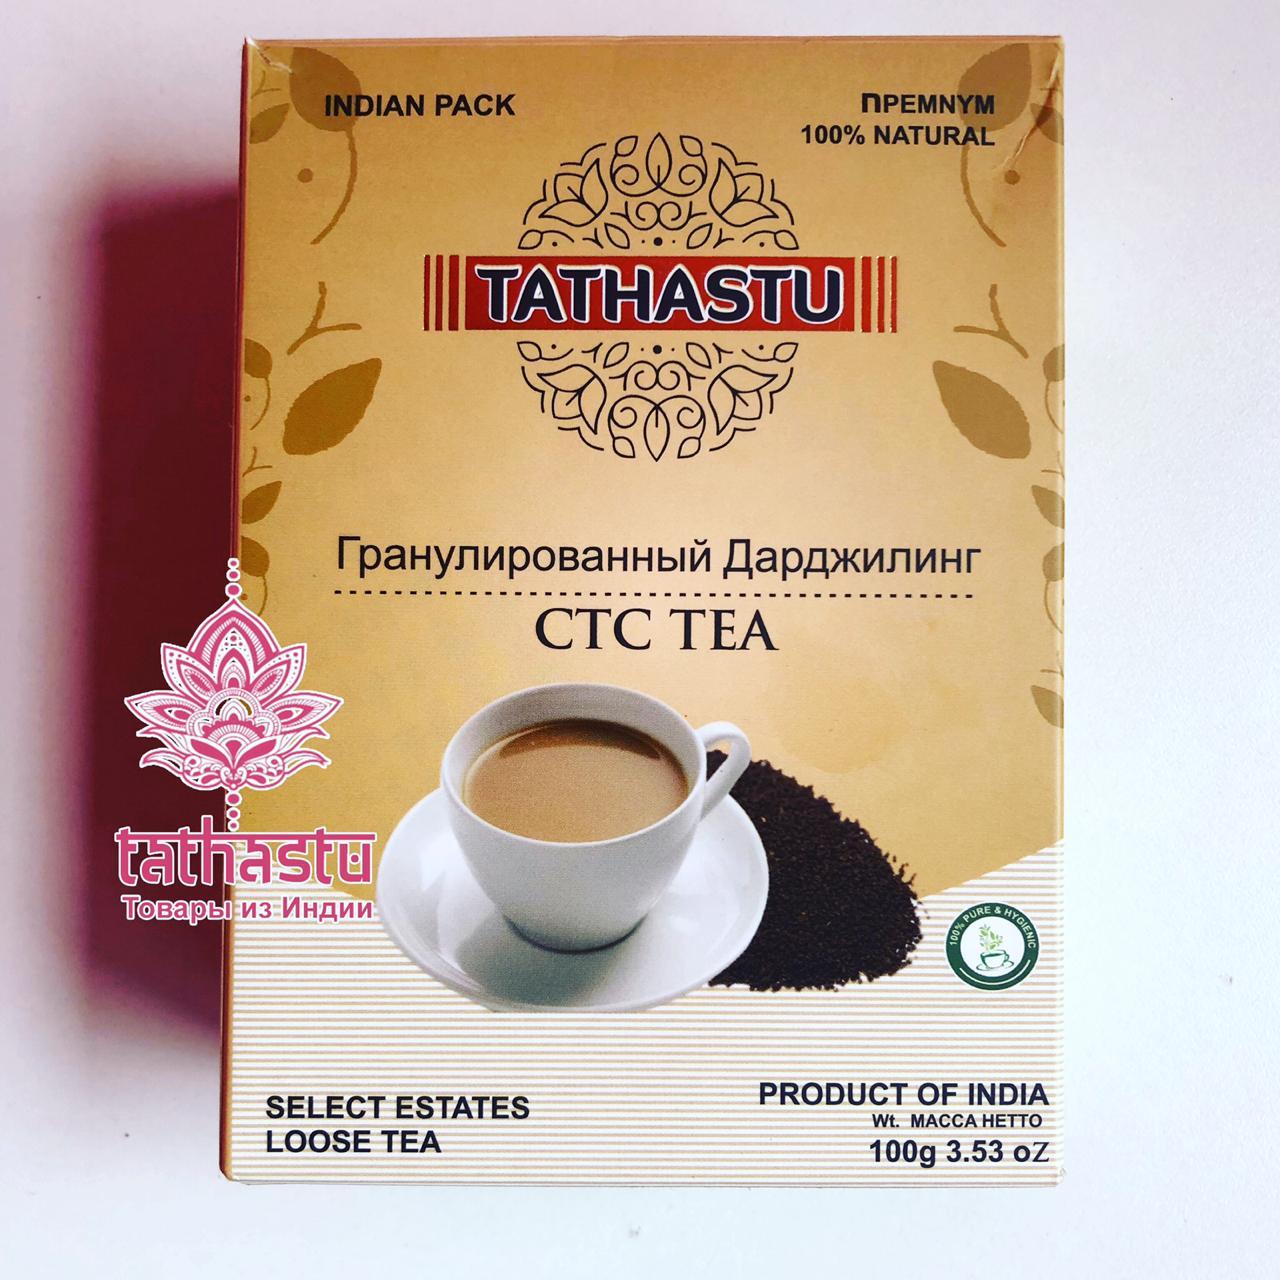 Tathastu гранулированный чай. Tathastu товары и индии